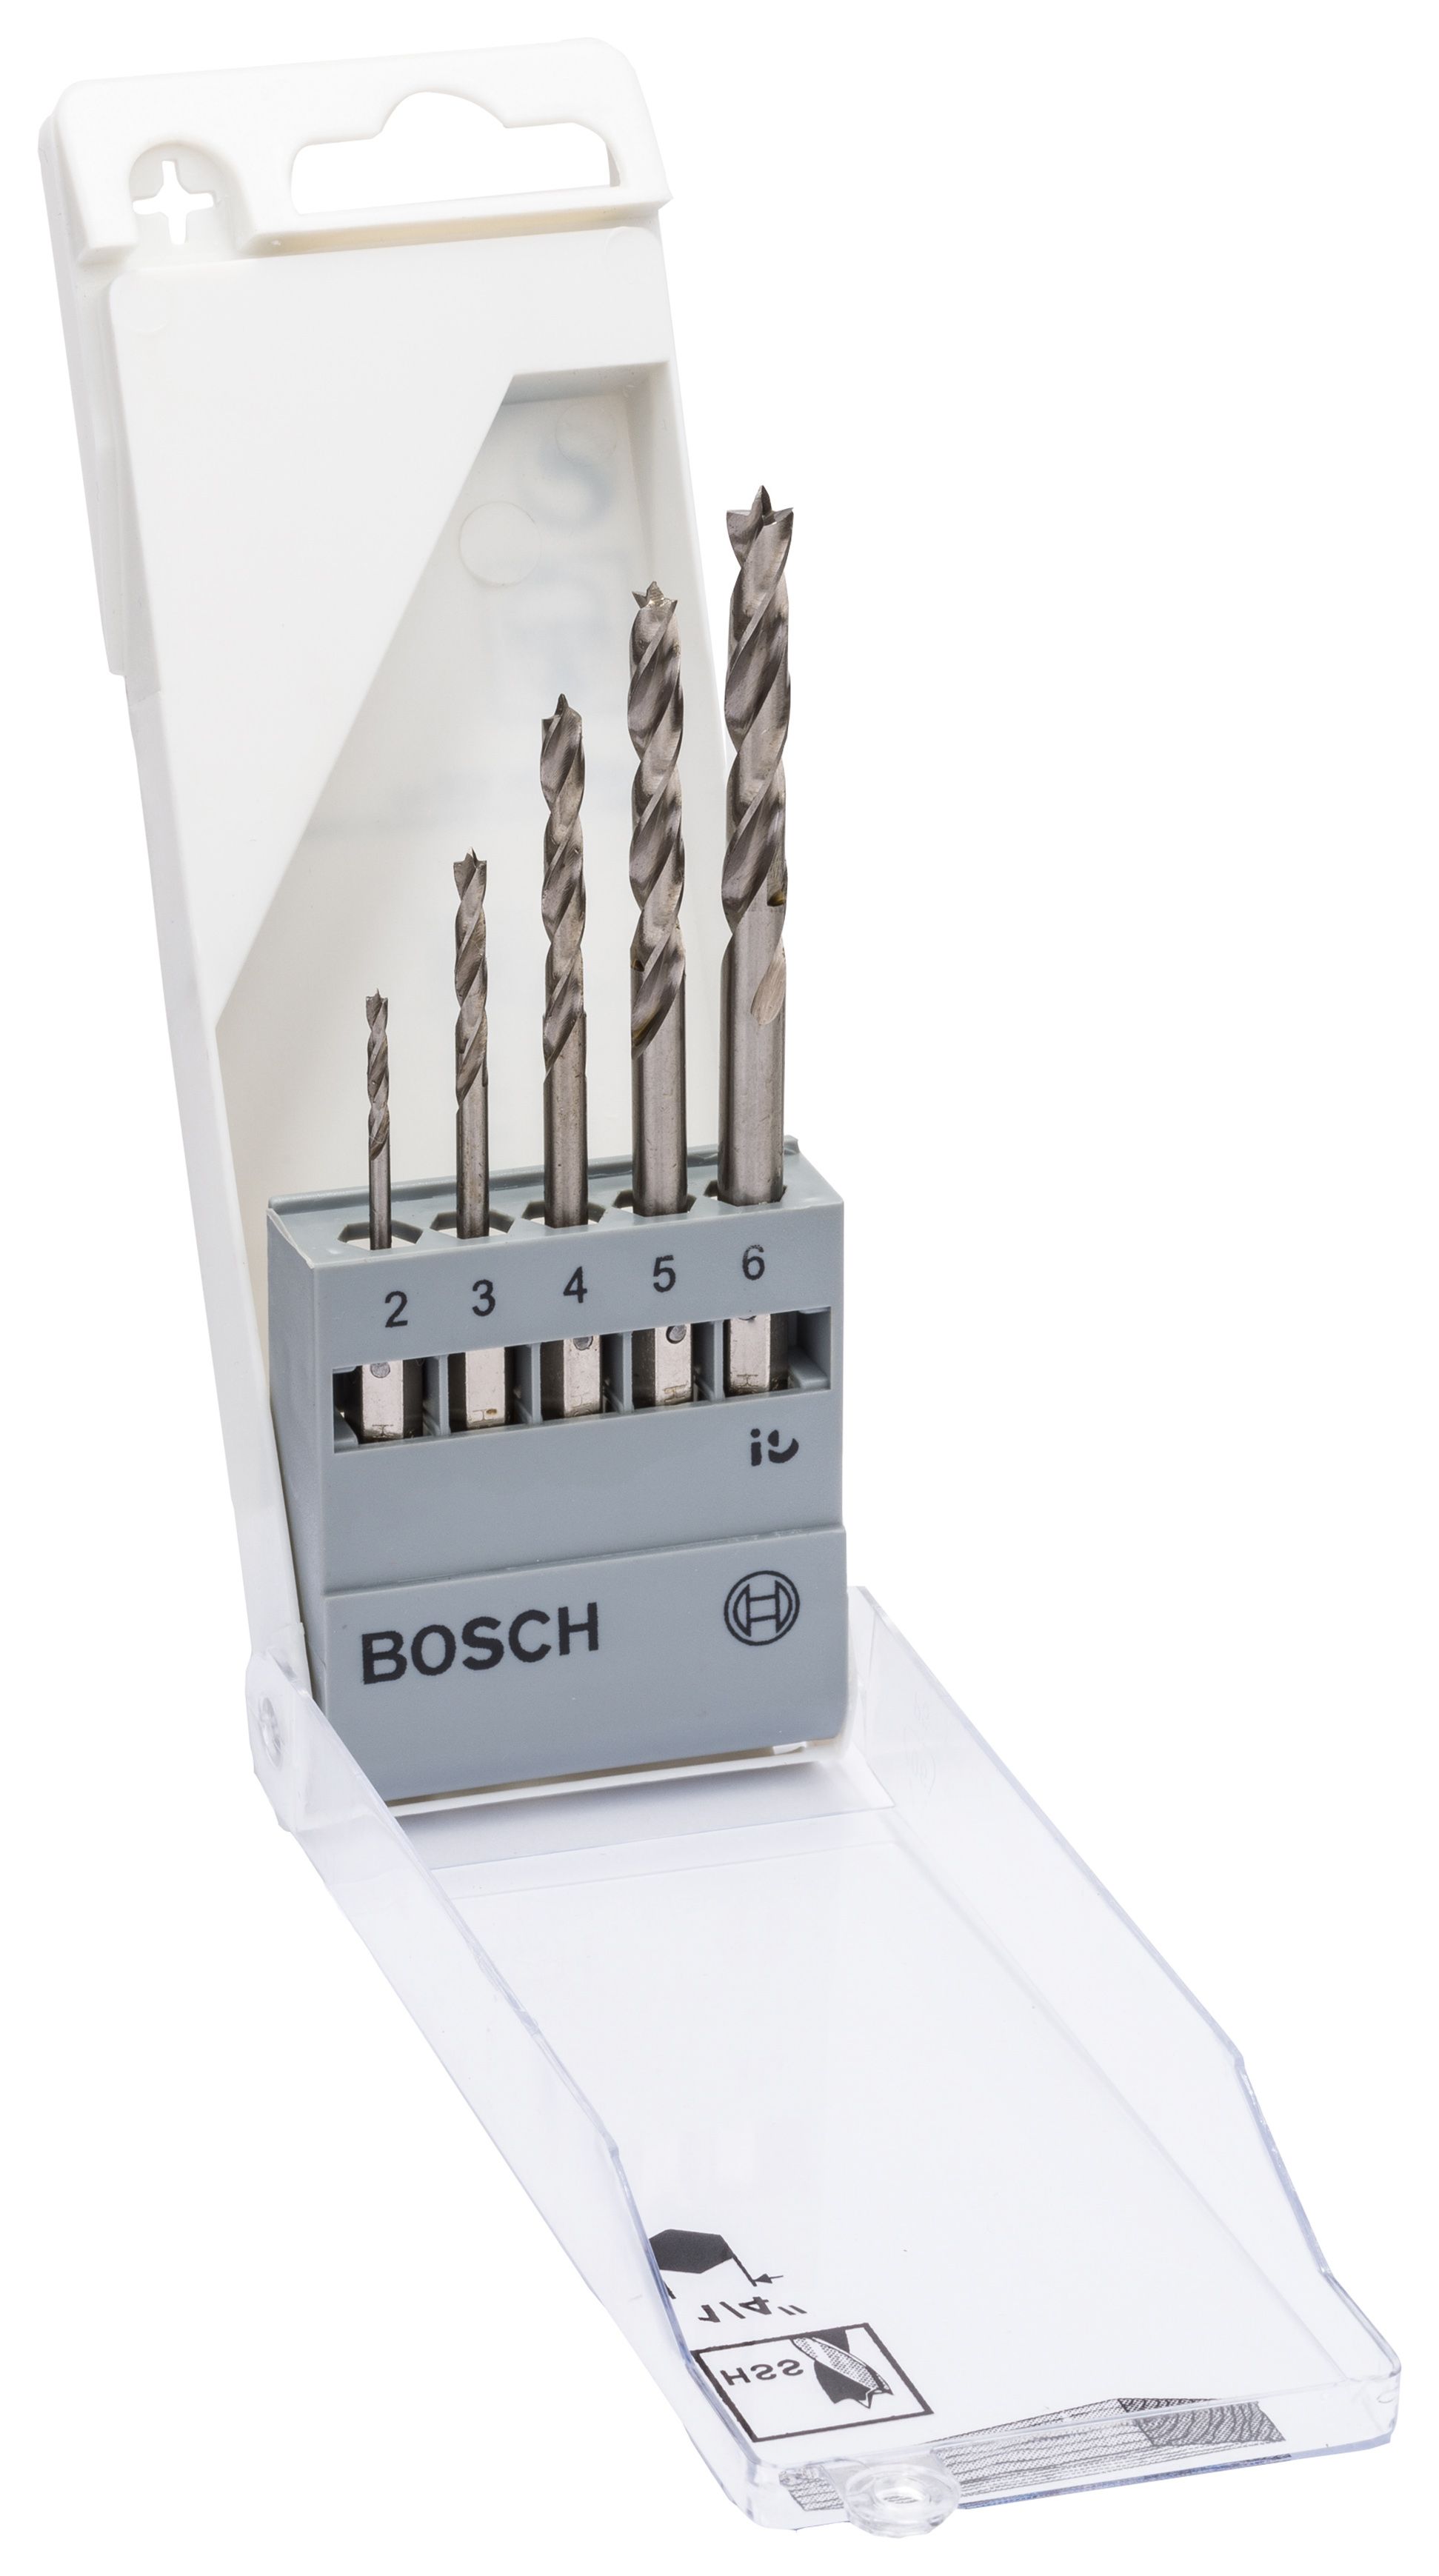 Bosch 2608595525 Hex Shank 5 Piece HSS Brad Point Wood Drill Bit Set - 2, 3, 4, 5, 6mm